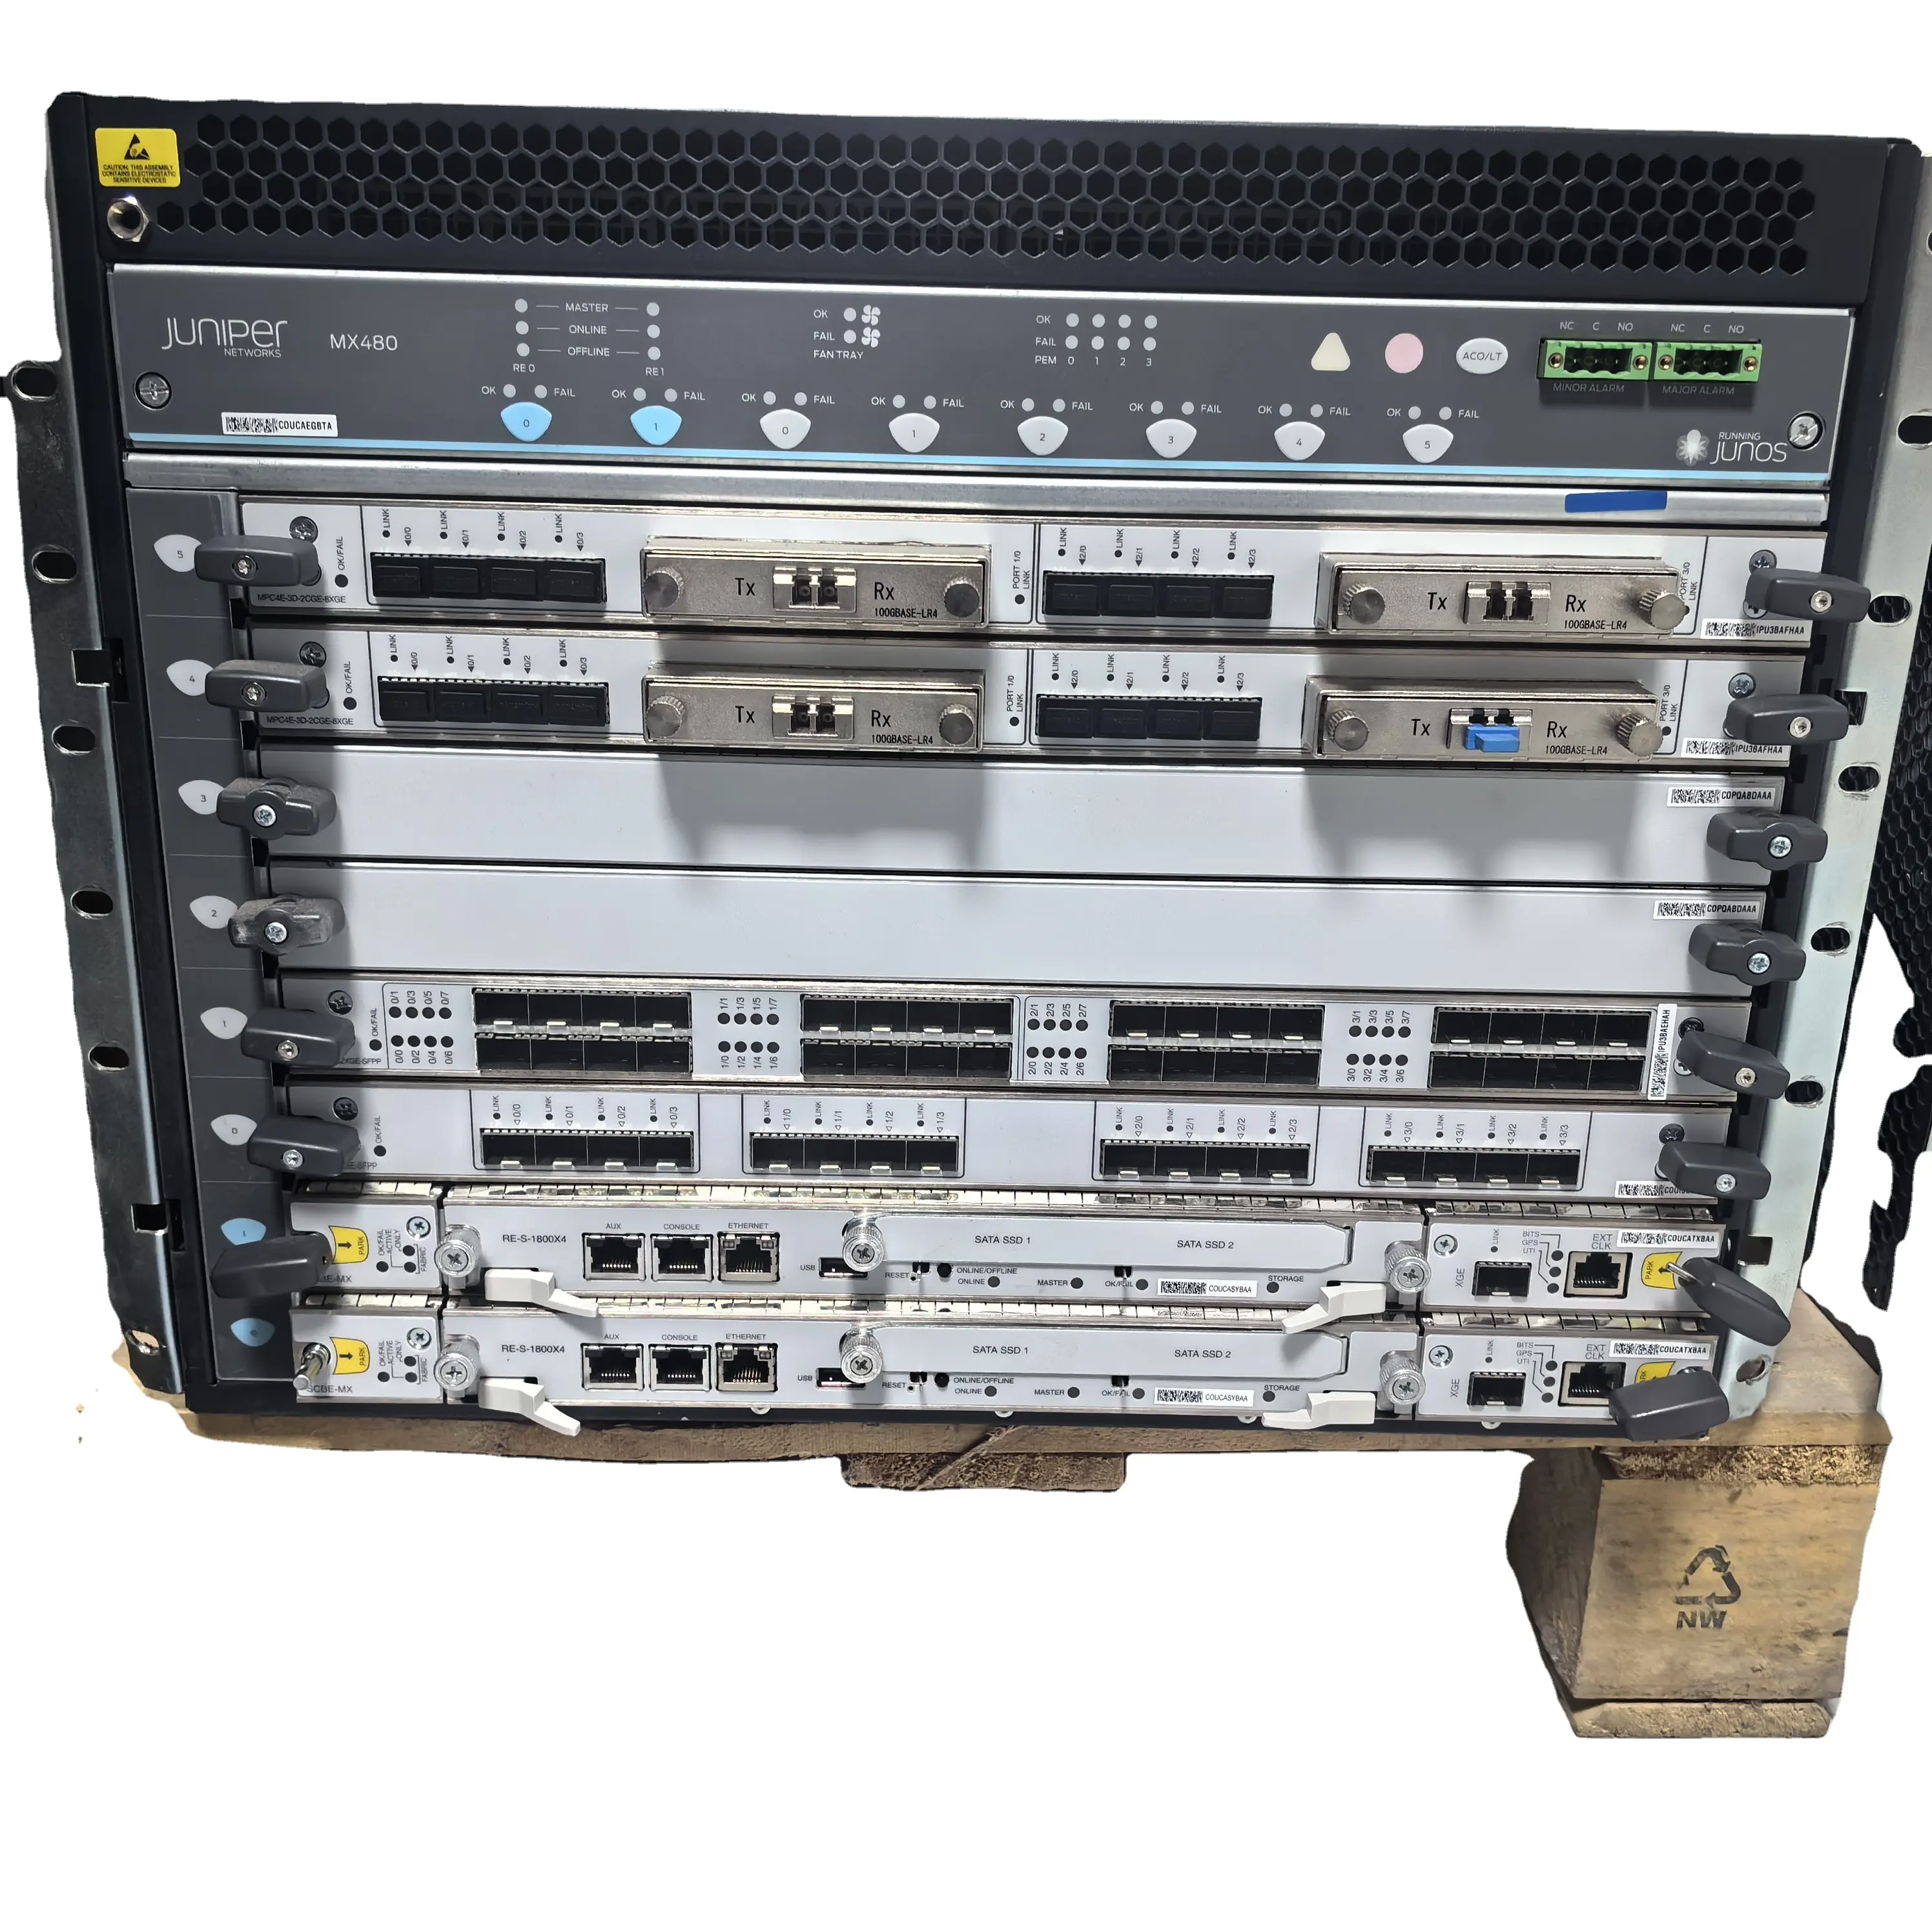 Gebruikte Jeneverbes Netwerk Routers MX480BASE-AC Bevat 4 Voedingen En 2 Fans Visitekaartjes Zijn Niet Inbegrepen